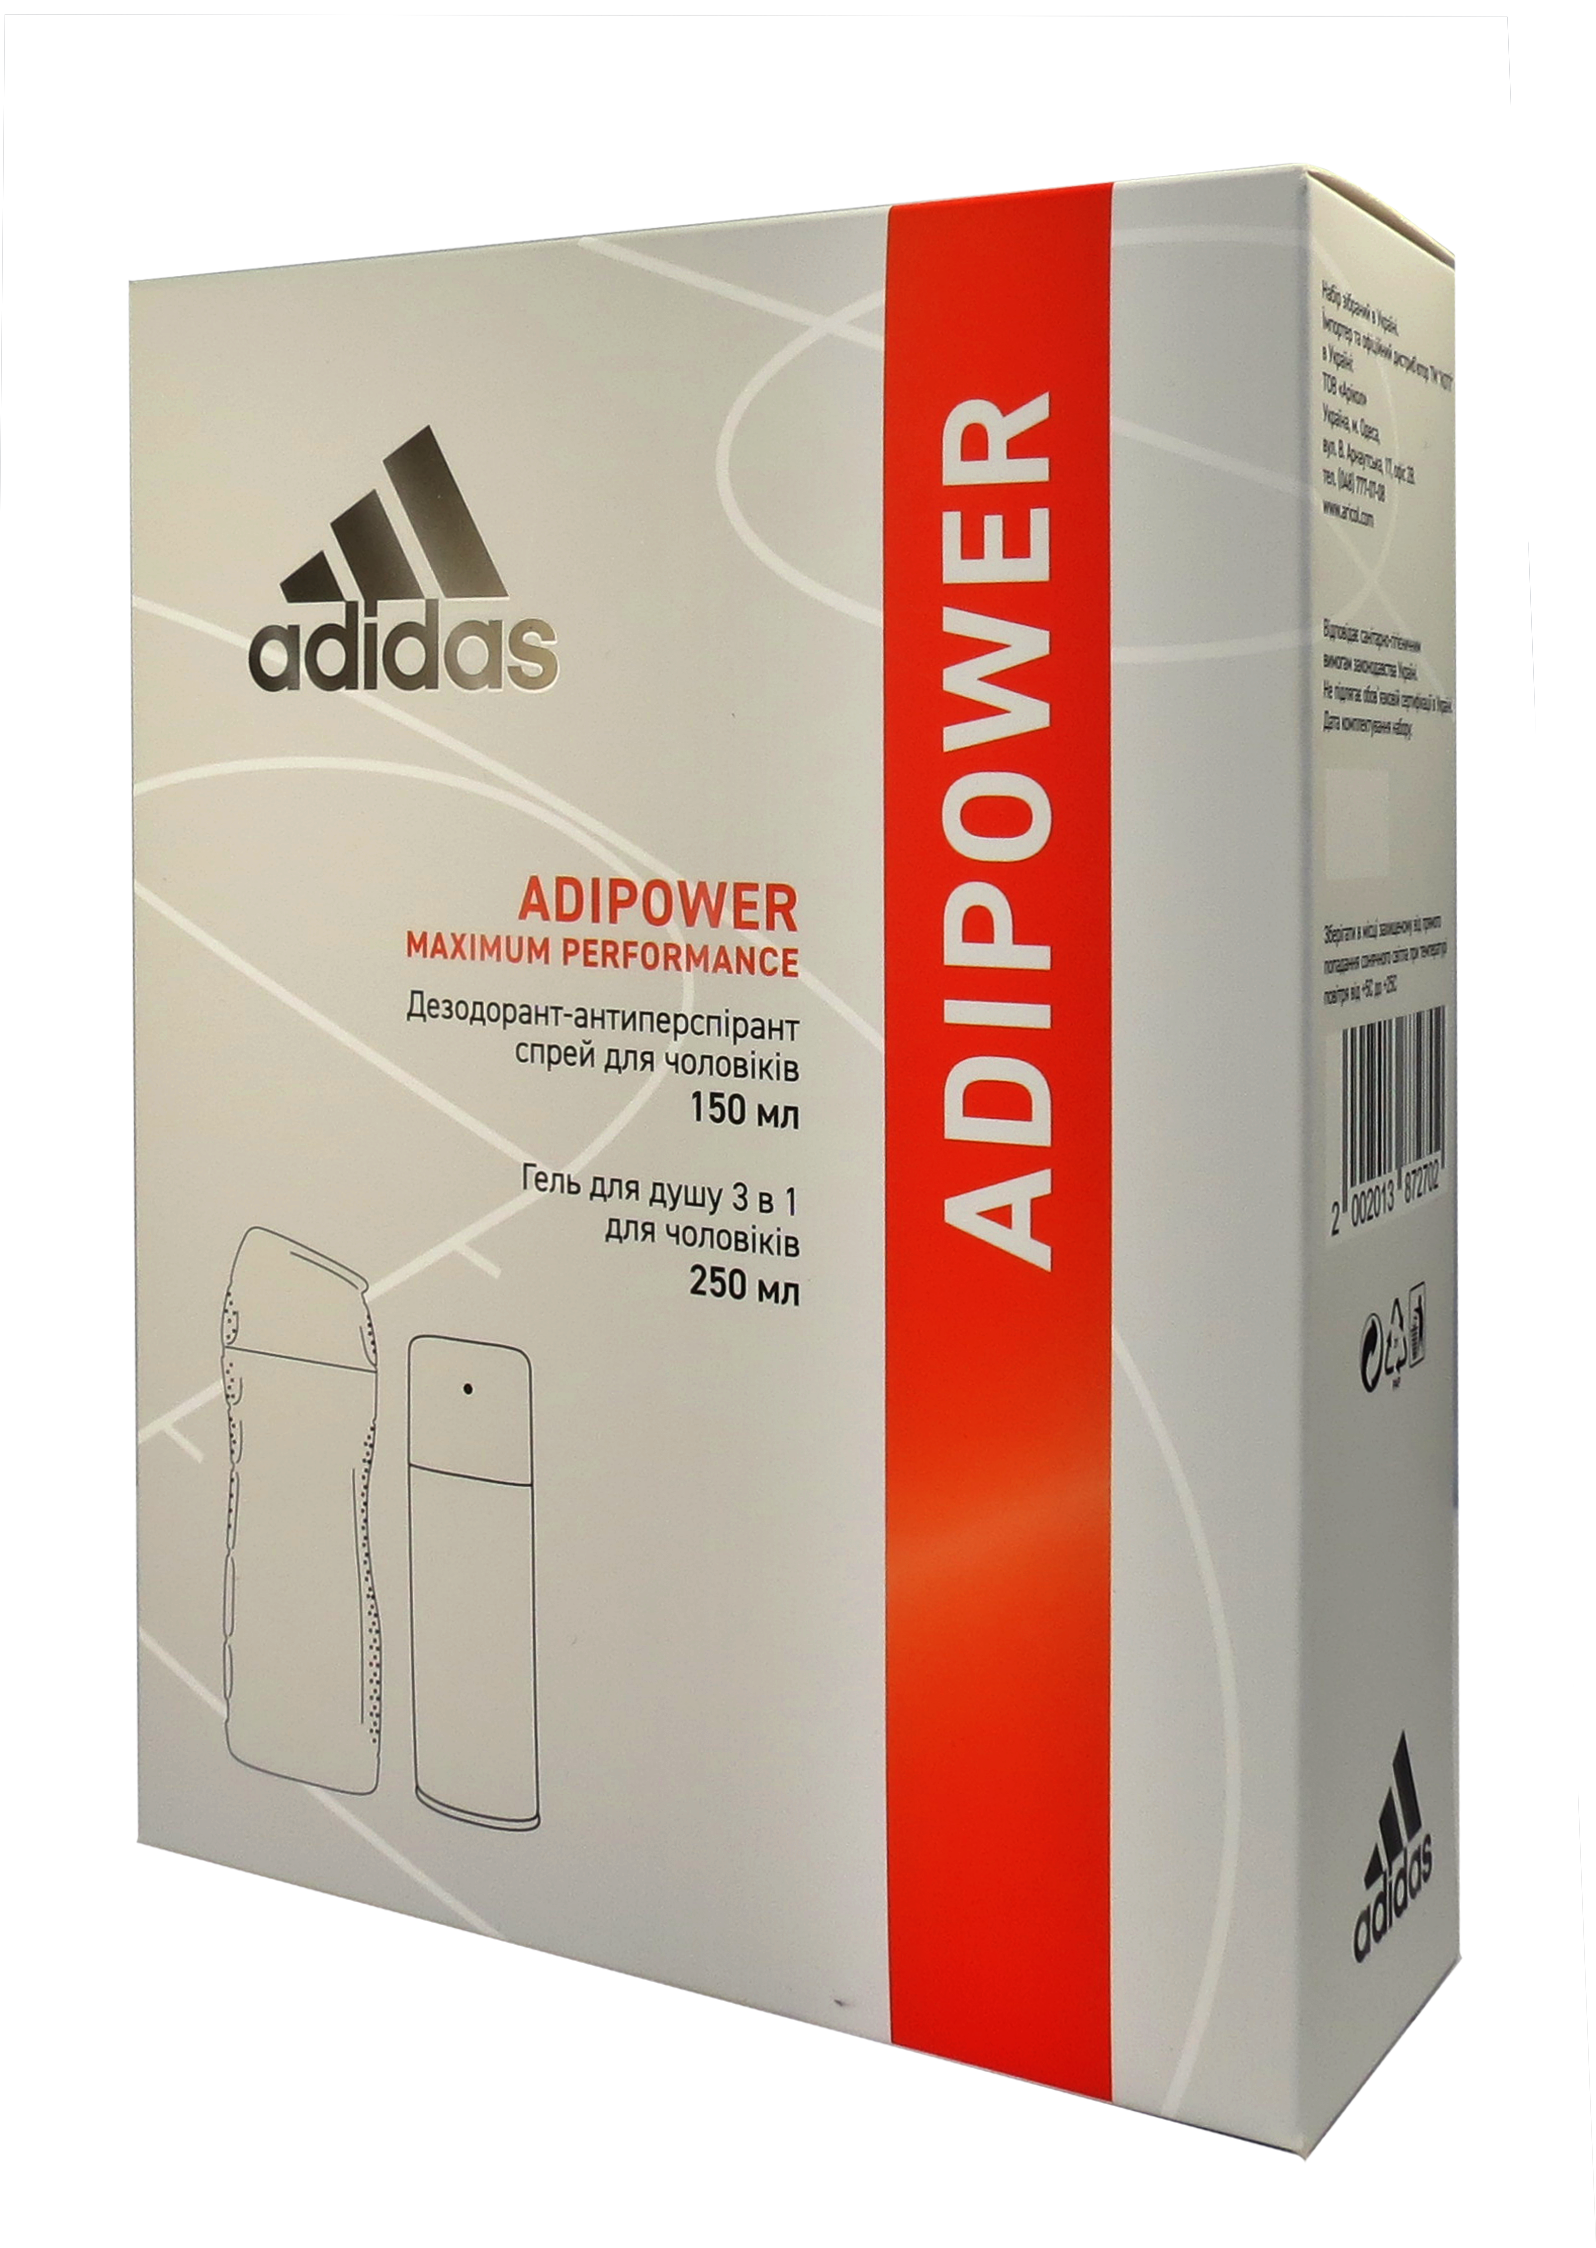 Набор для мужчин Adidas 2020 Дезодорант-антиперспирант Adipower, 150 мл + Гель для душа 3in1 Body hair and face 250 мл - фото 2